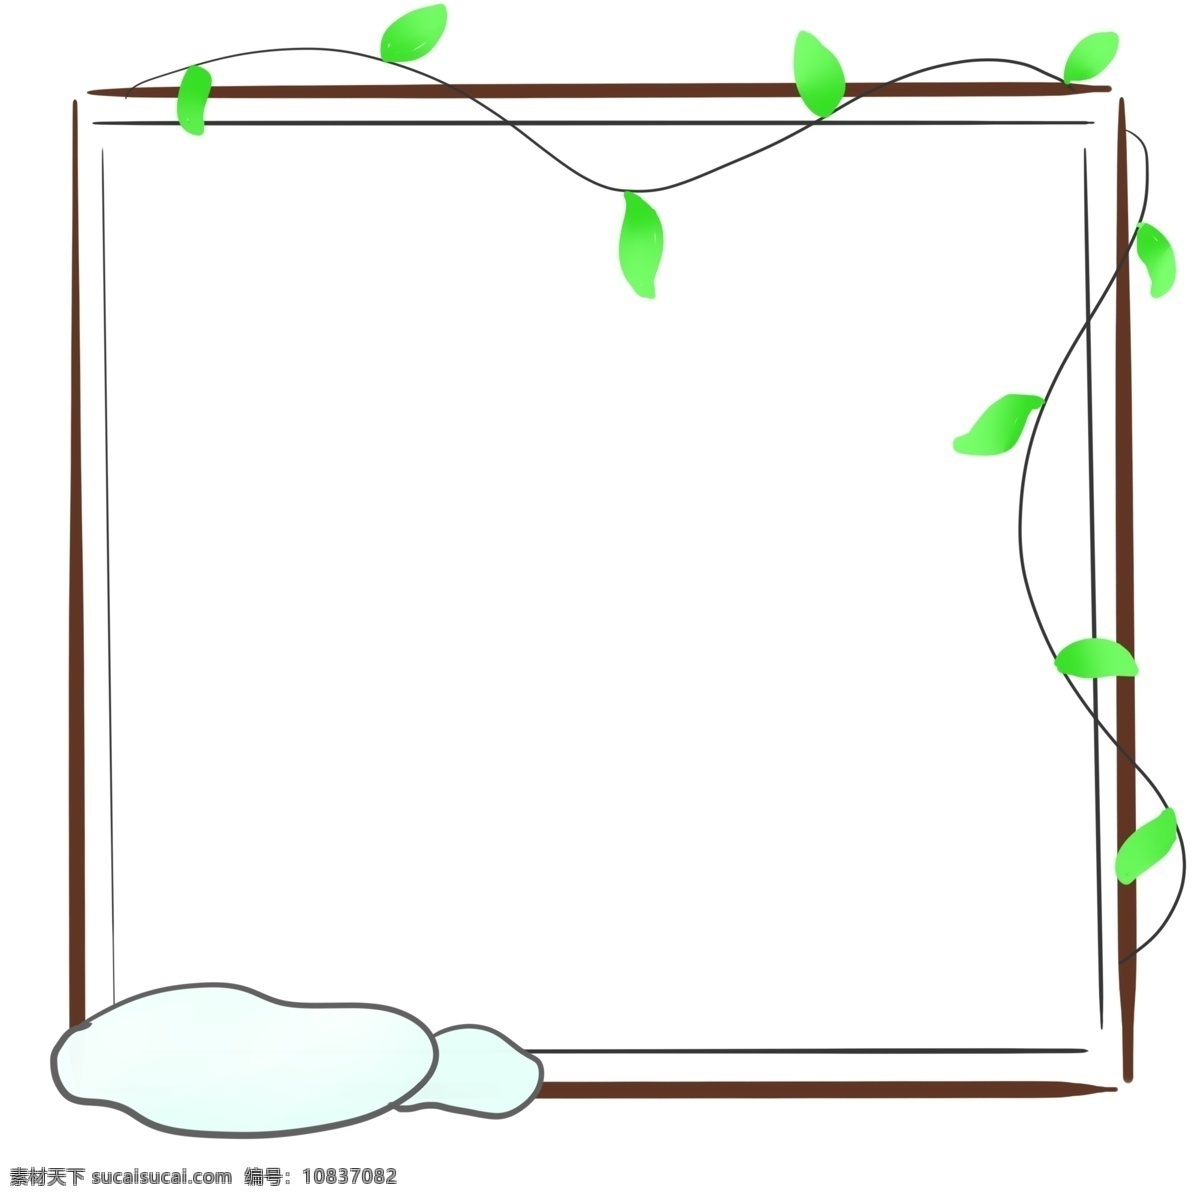 卡通 棕色 边框 插图 深棕色边框 线条边框 树叶边框 正方形边框 黑色里边 白色遮挡物 植物装饰 背景设计